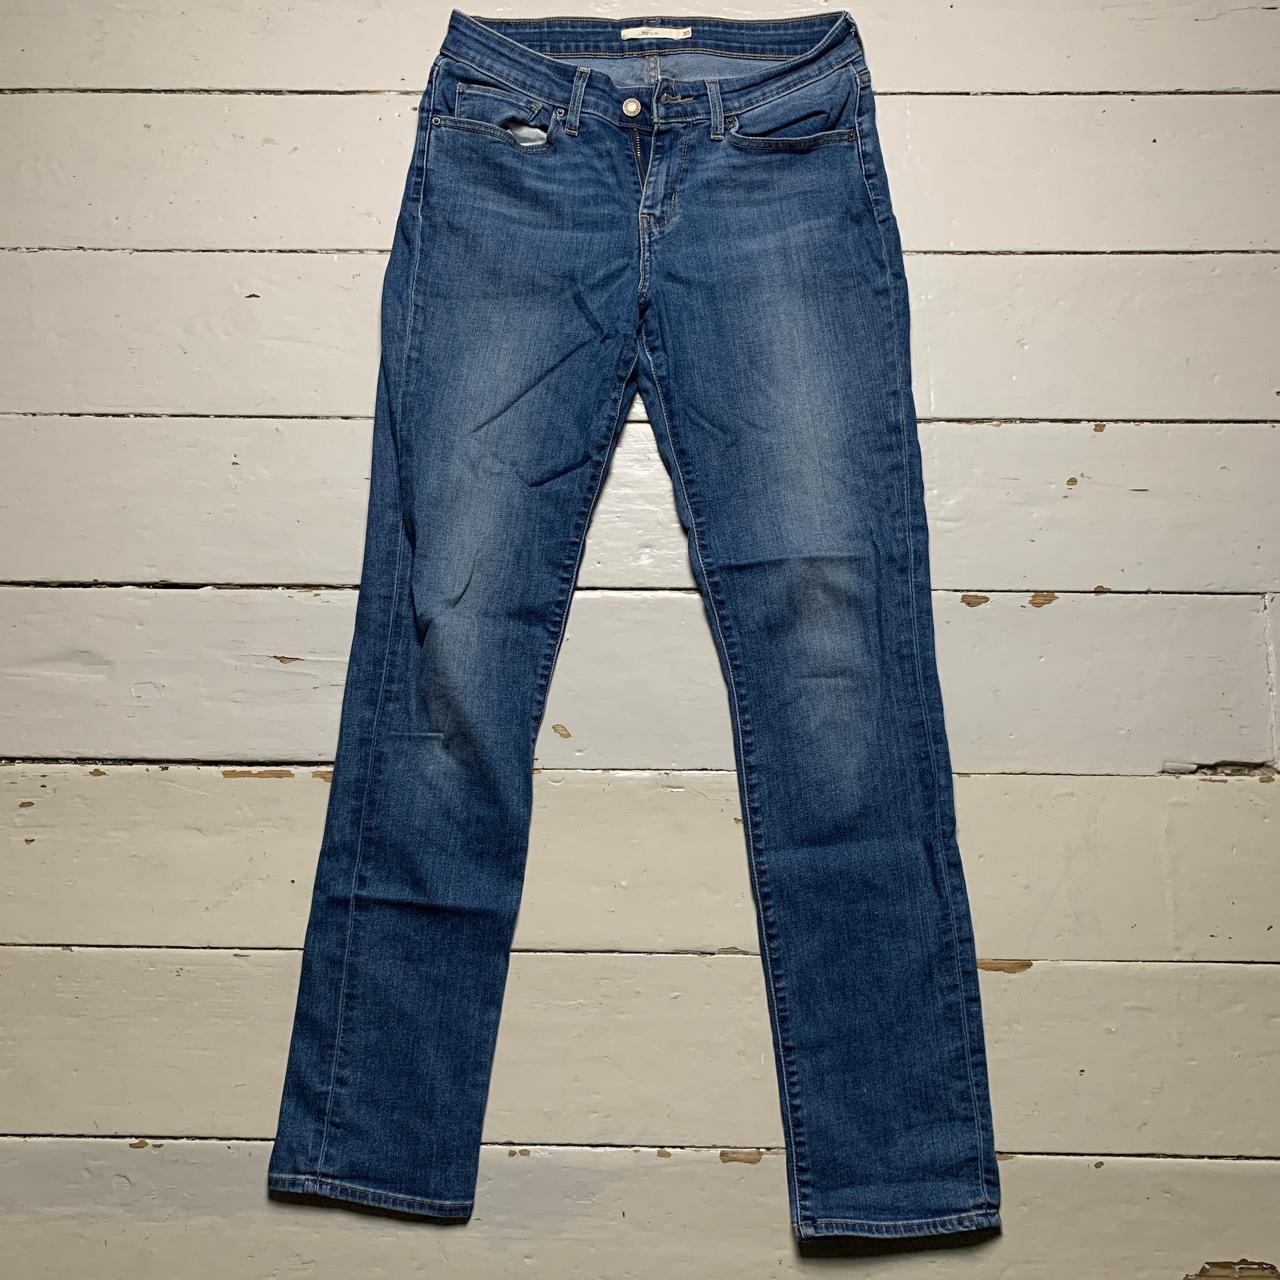 Levis 712 Slim Blue Jeans